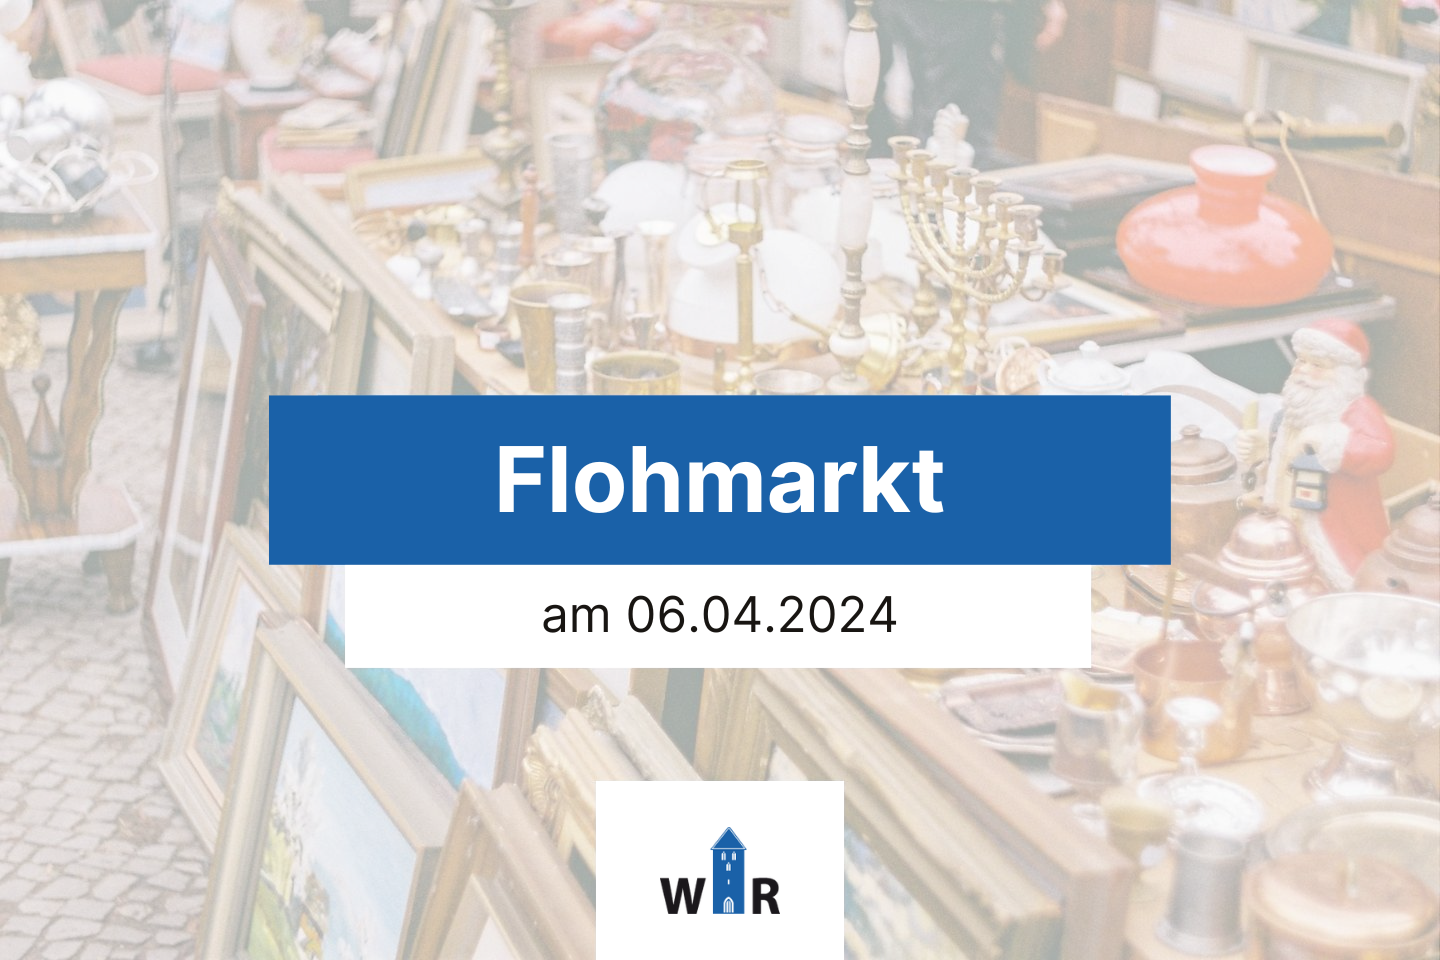 Flohmarkt am 06.04.2024 in Recke